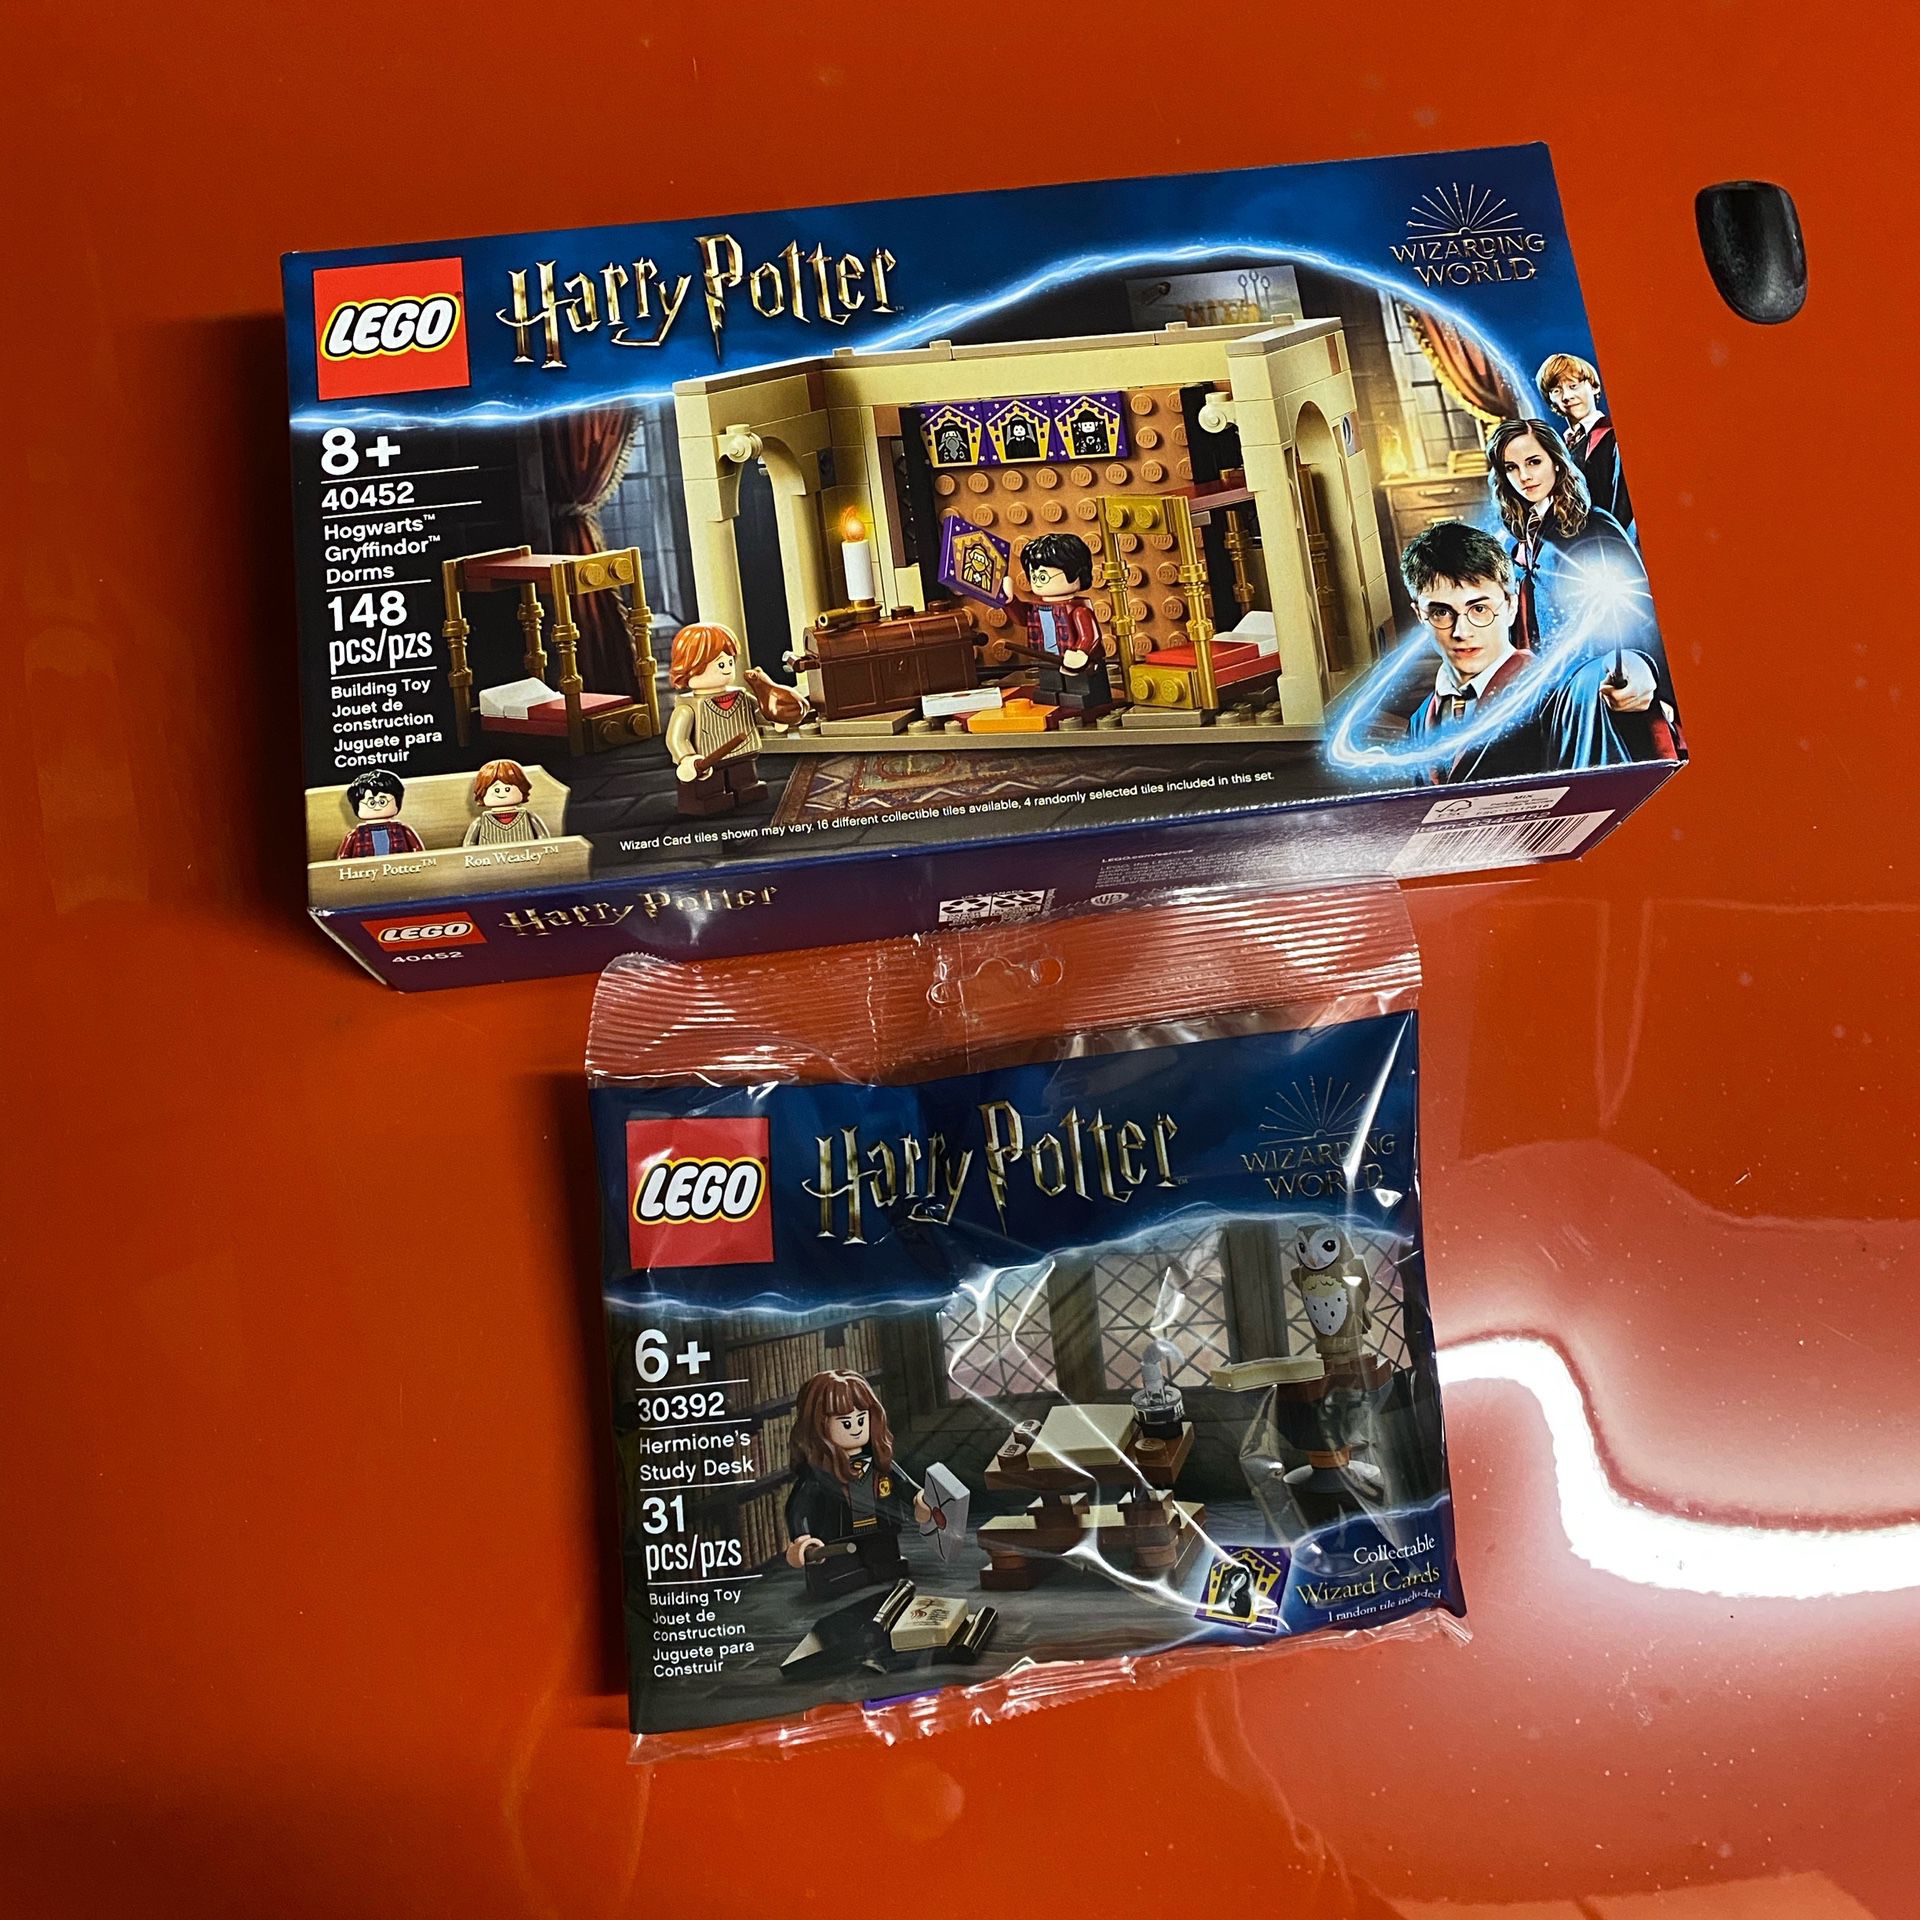 LEGO Harry Potter 40452 Hogwarts Gryffindor Dorms In Hand